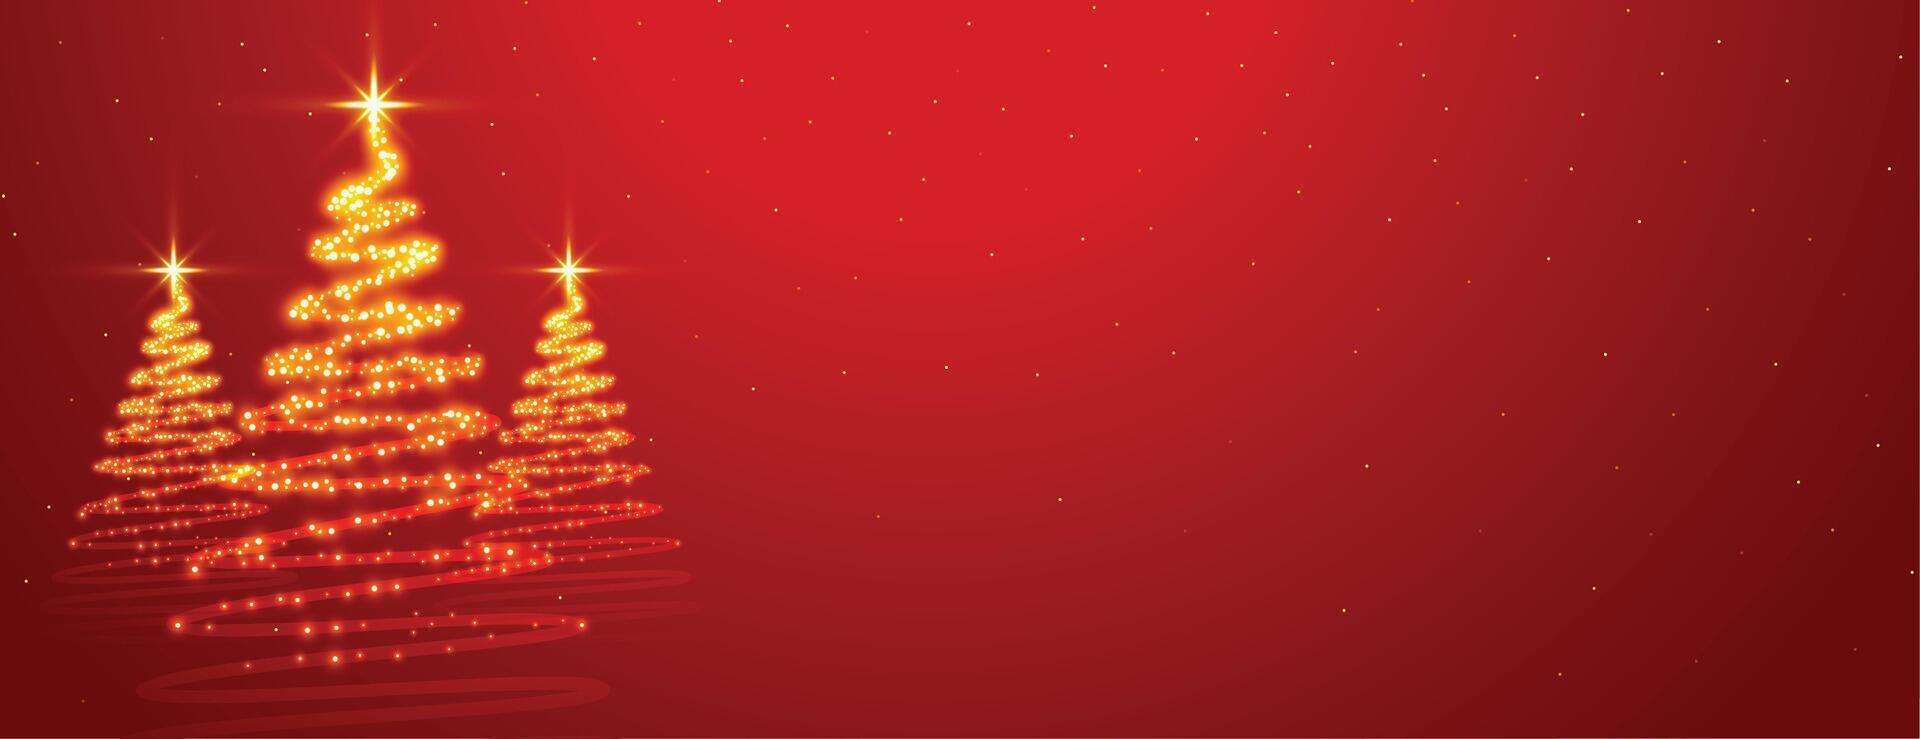 funkelnd Weihnachten Star Baum auf rot Hintergrund vektor